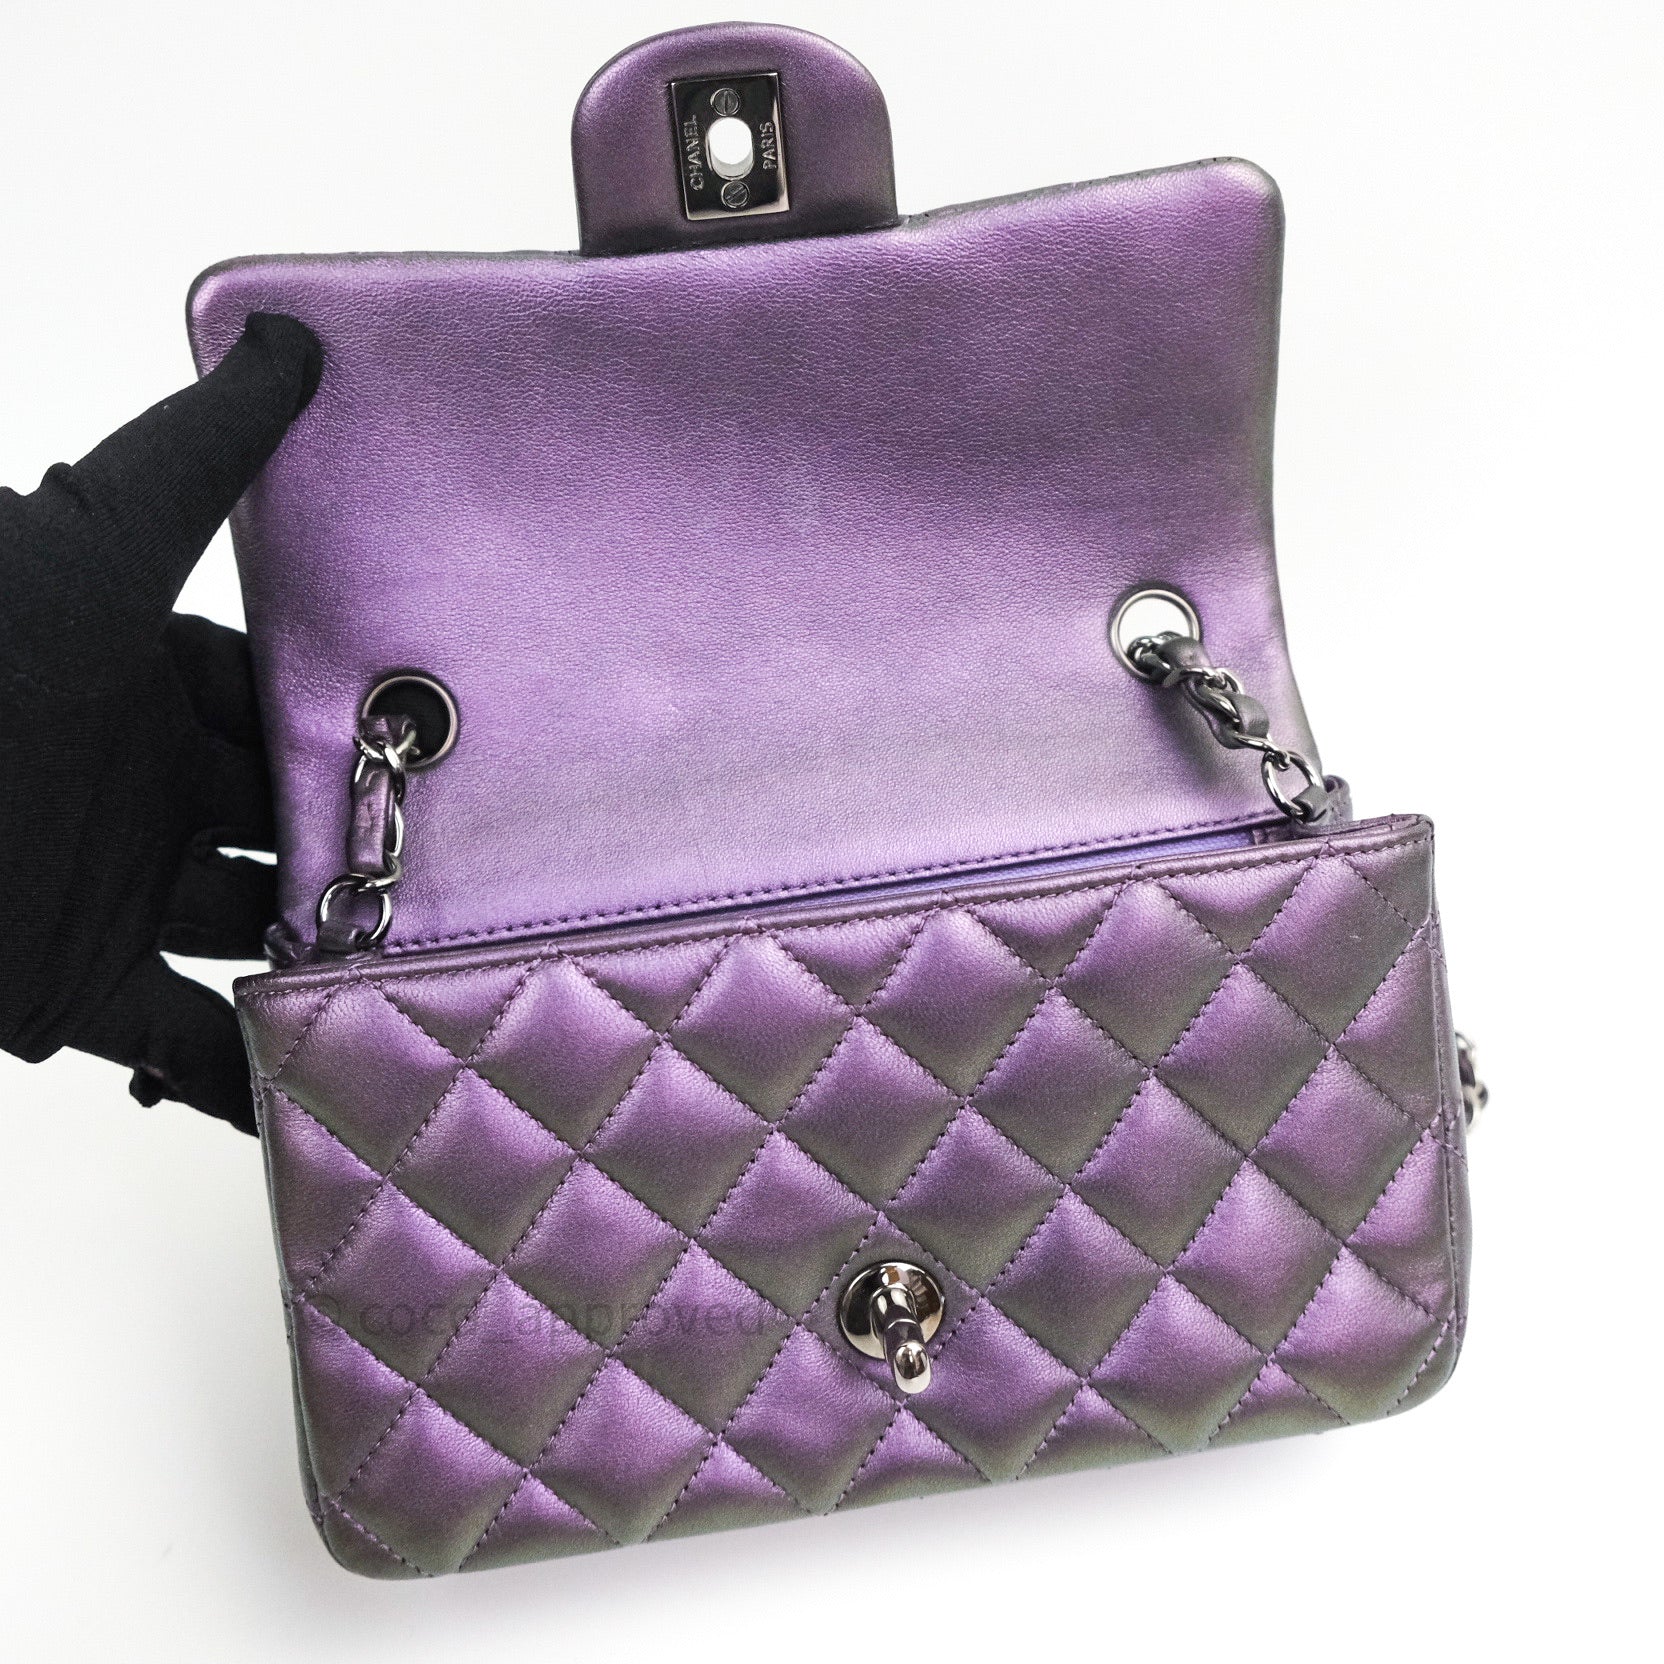 Chanel Incognito Square Flap Bag Quilted Caviar Mini Purple 895564